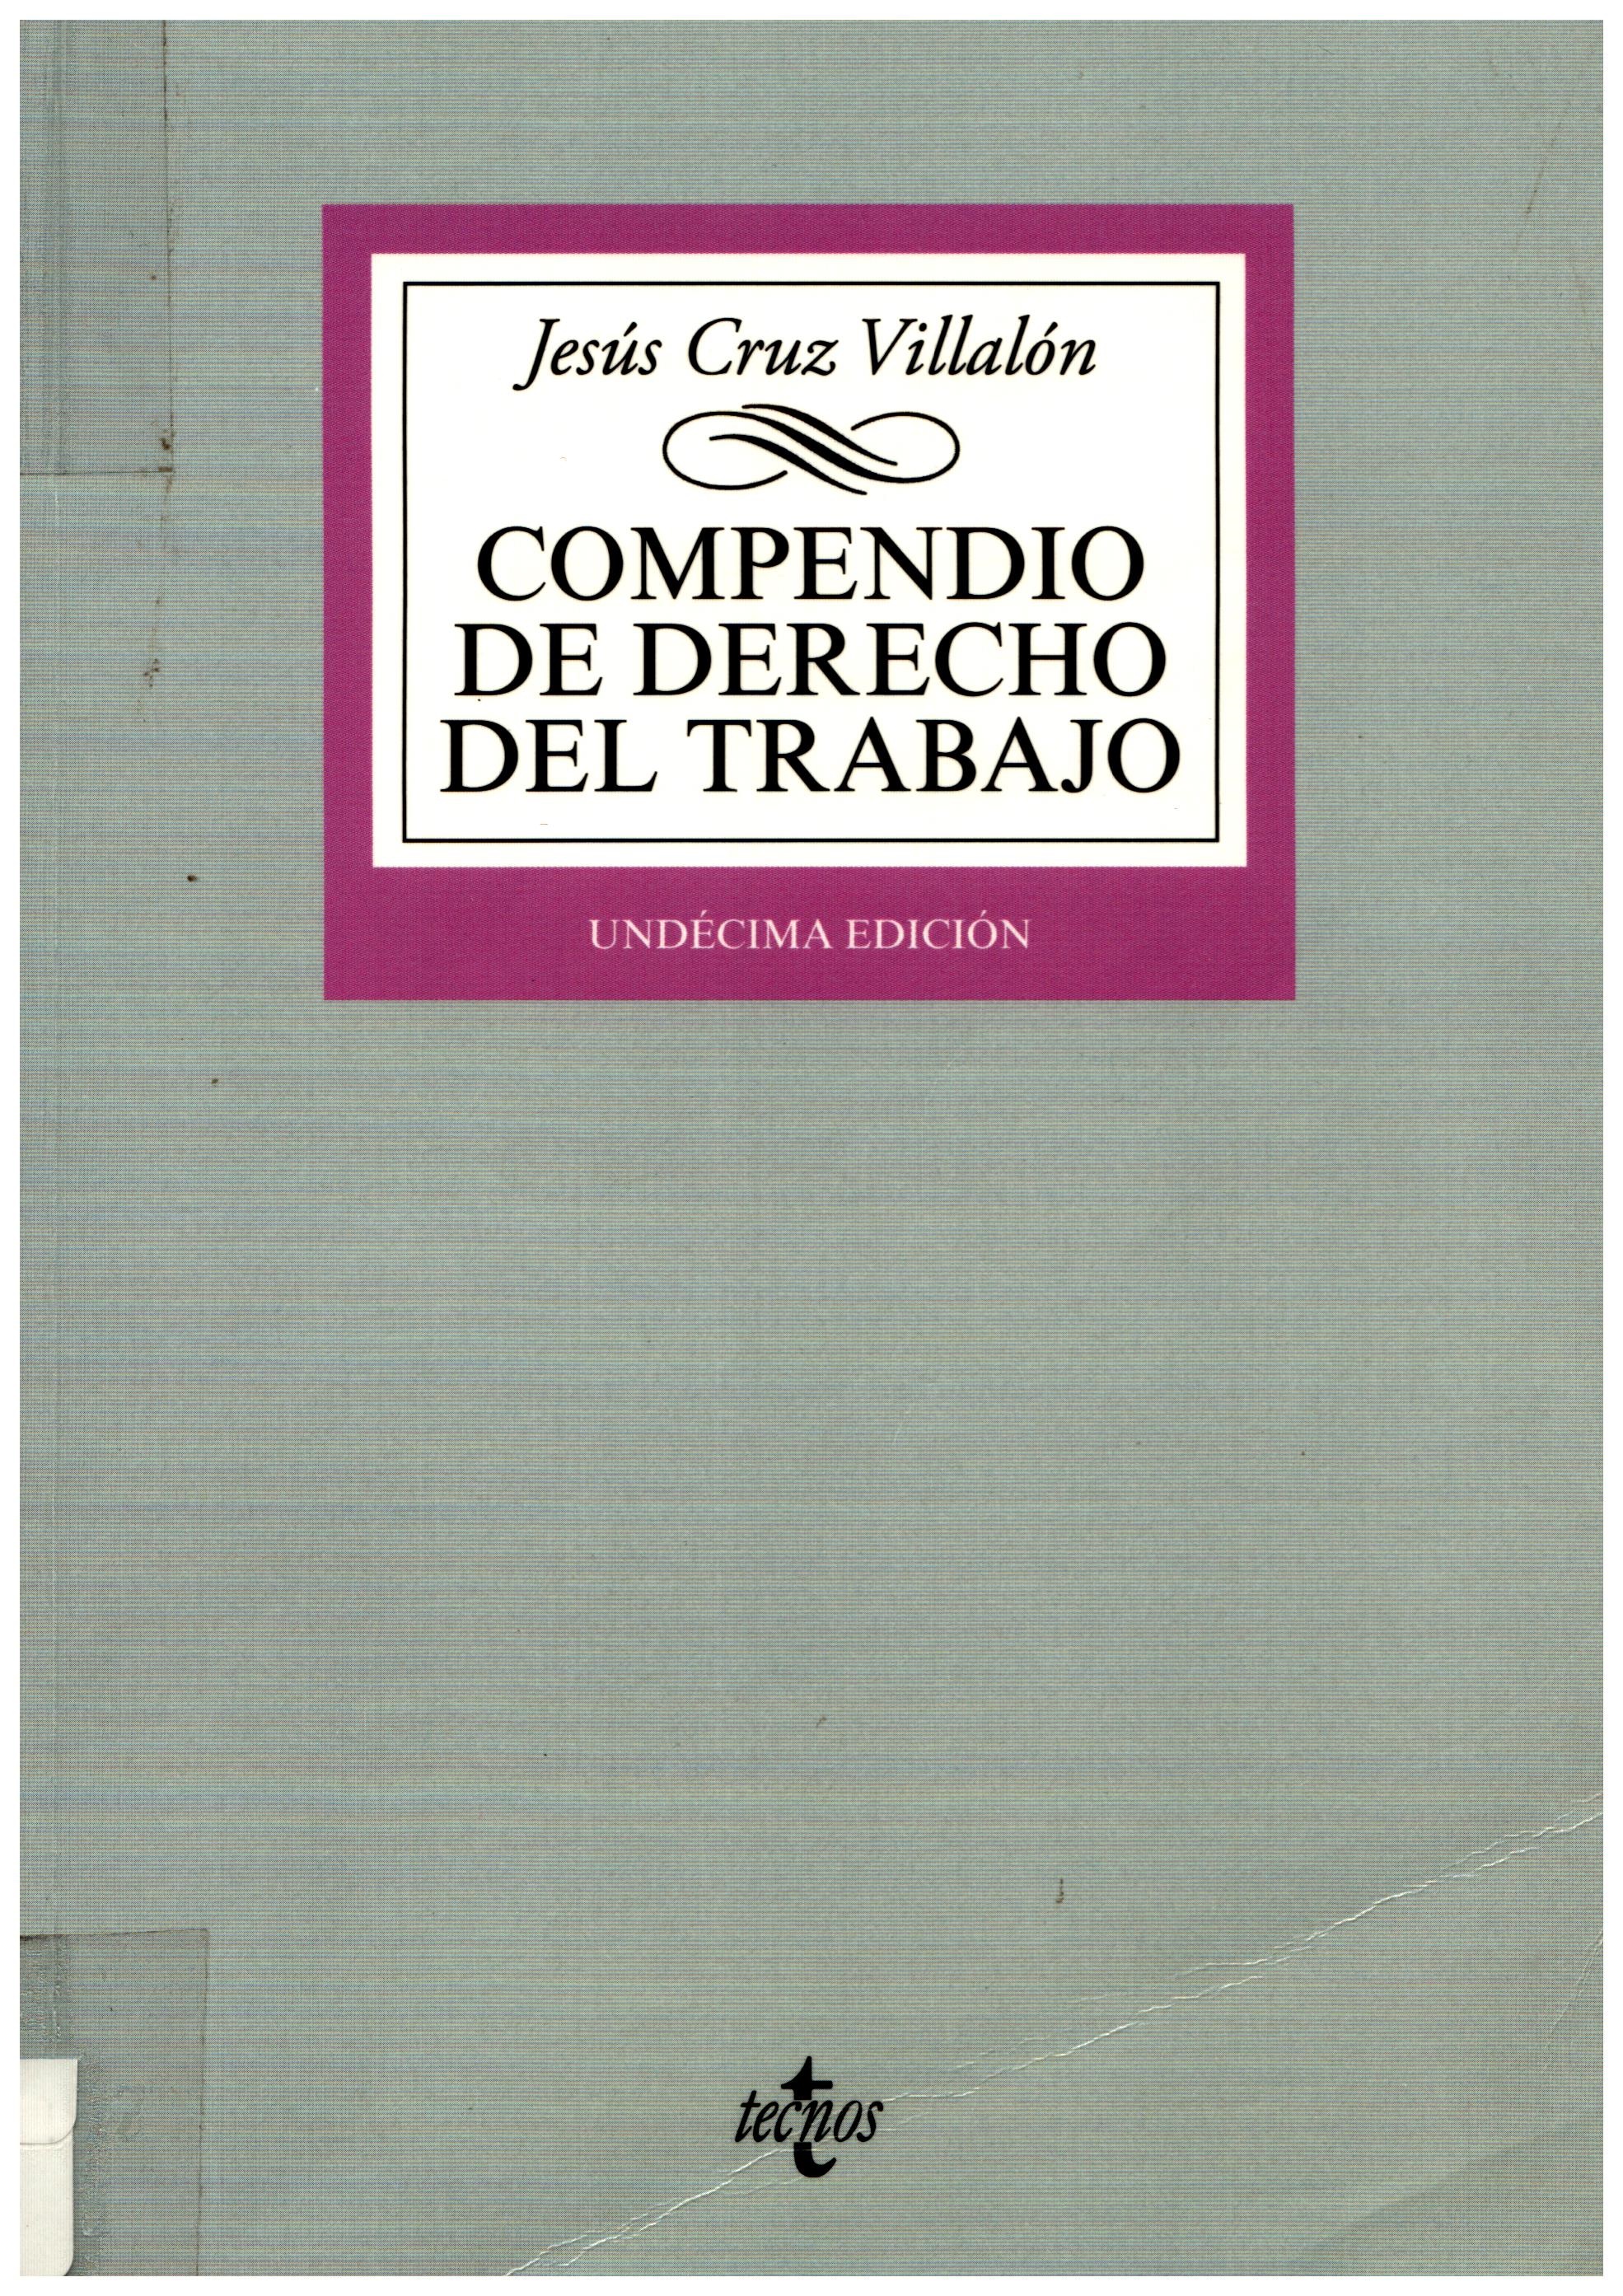 Imagen de portada del libro Compendio de derecho del trabajo